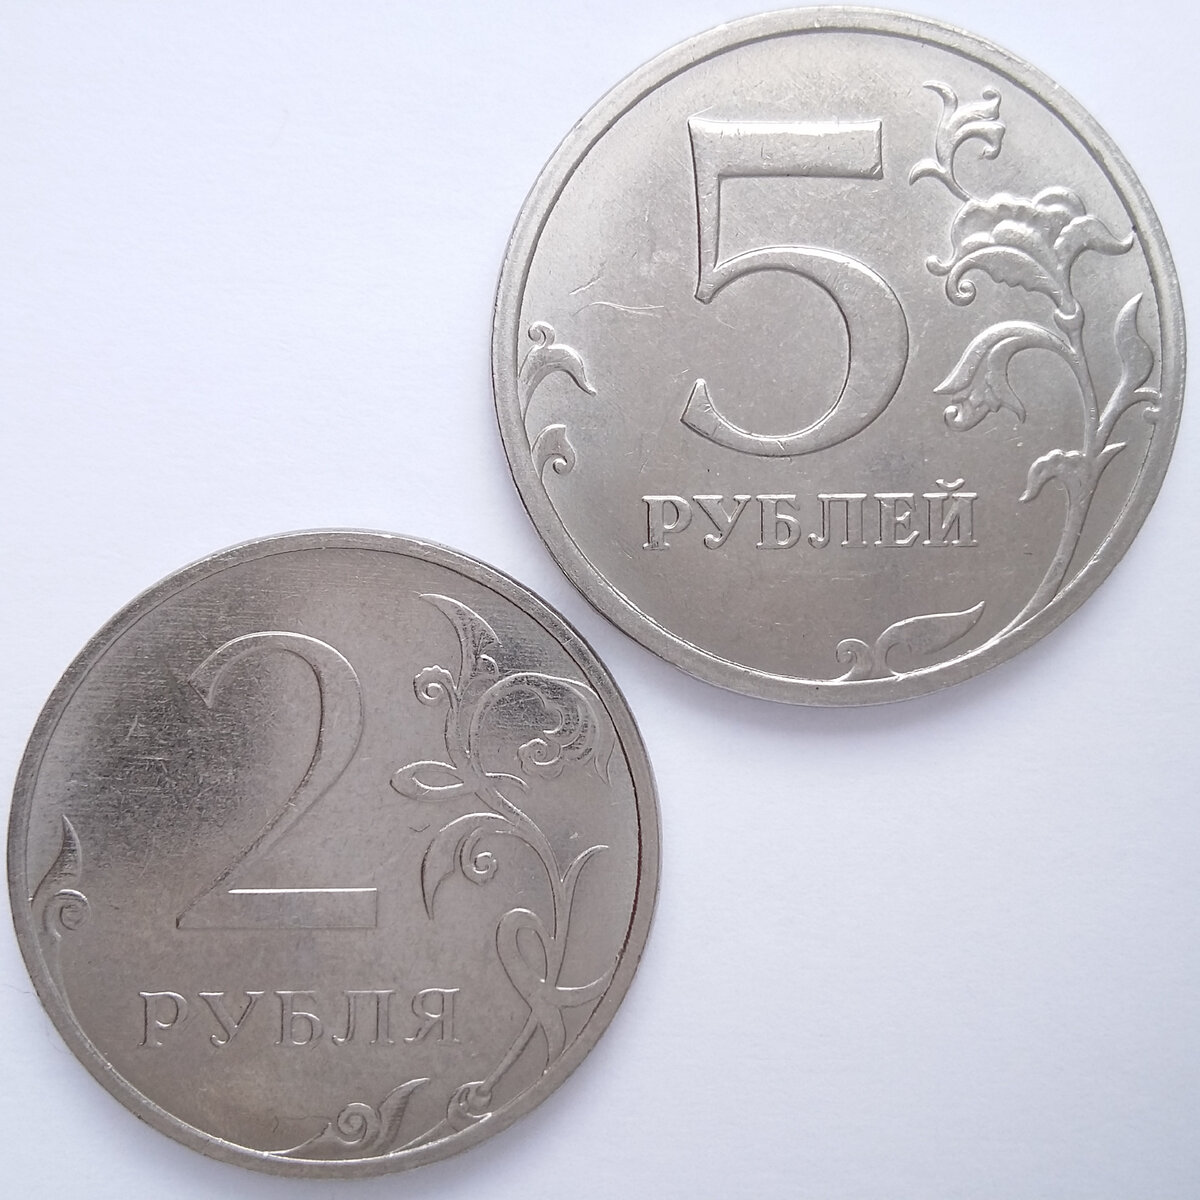 5 рублей 2021. 2 Рубля 2021 года. Монета 2 рубля 2021.